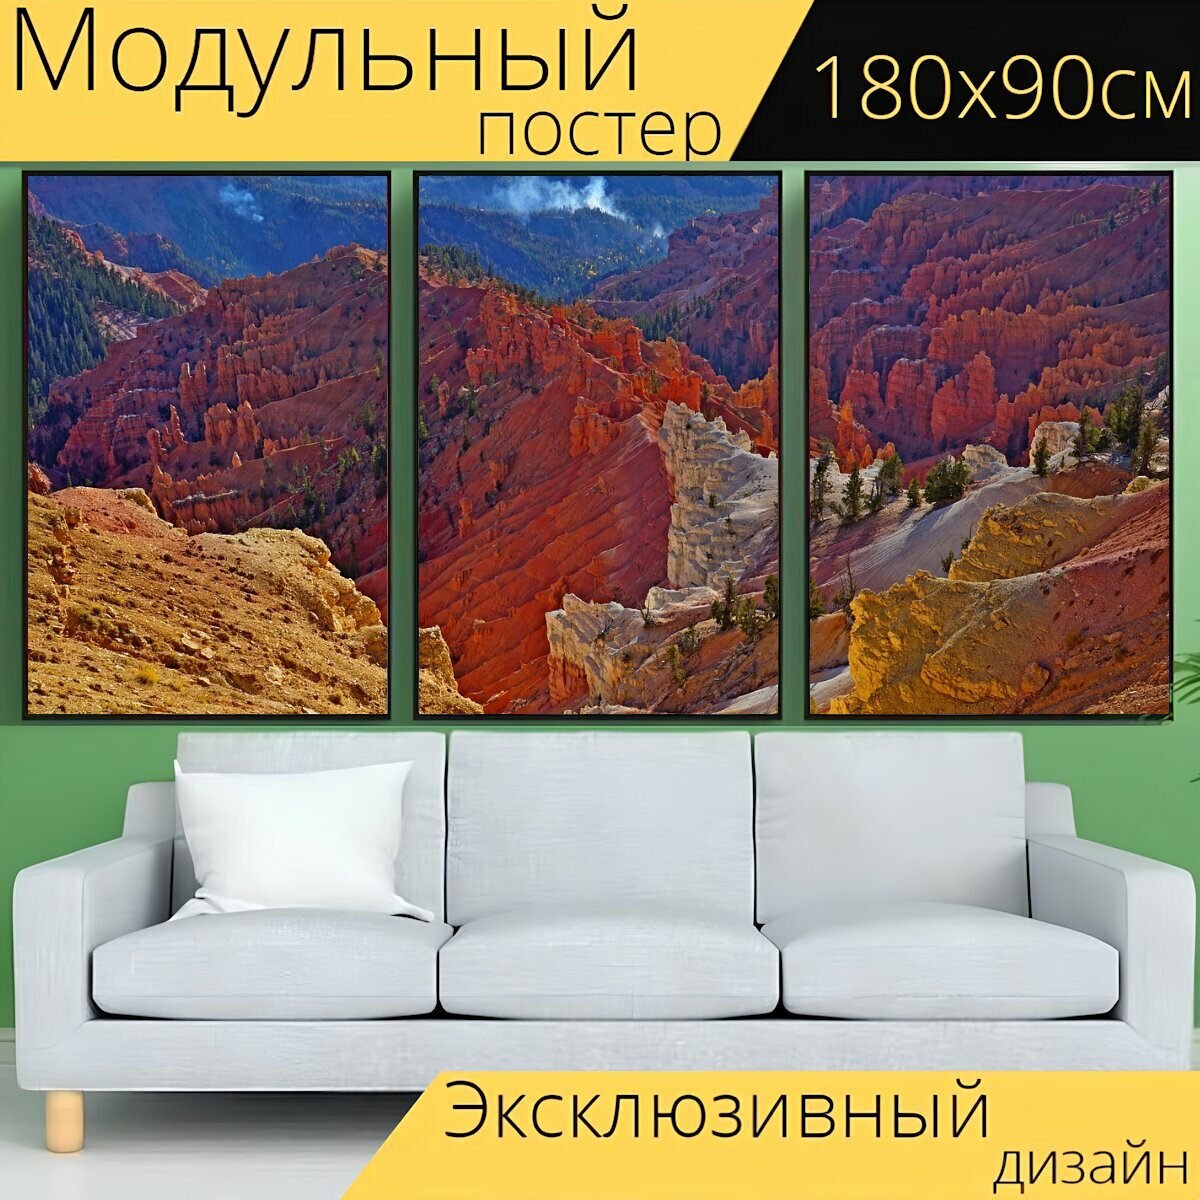 Модульный постер "Горы, горные породы, каньон" 180 x 90 см. для интерьера